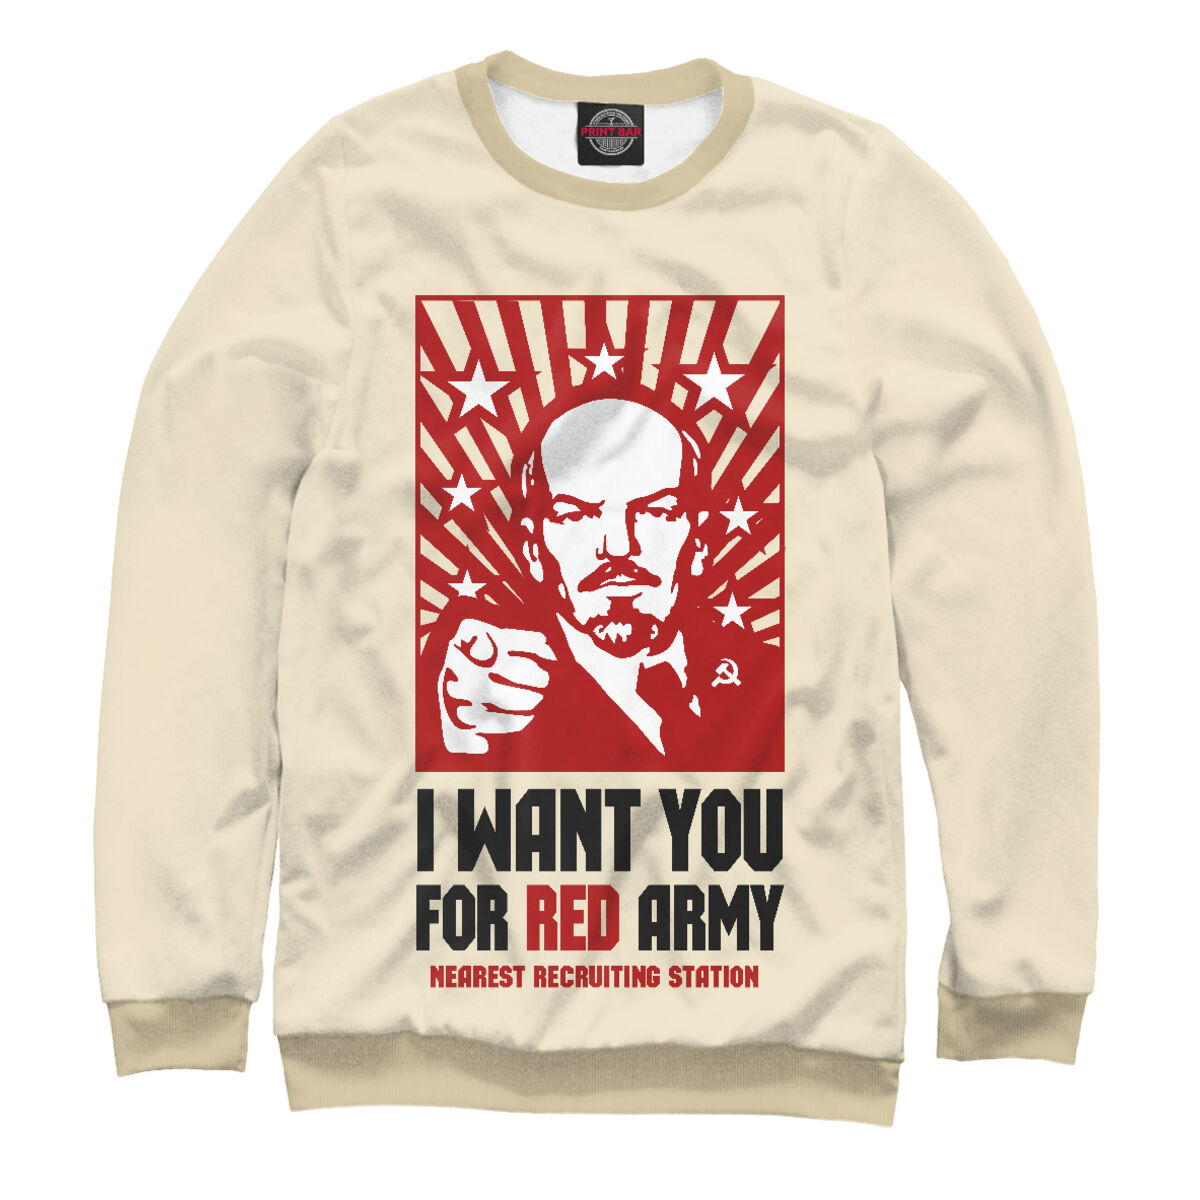 Мне нужен был красный. Худи с Лениным.